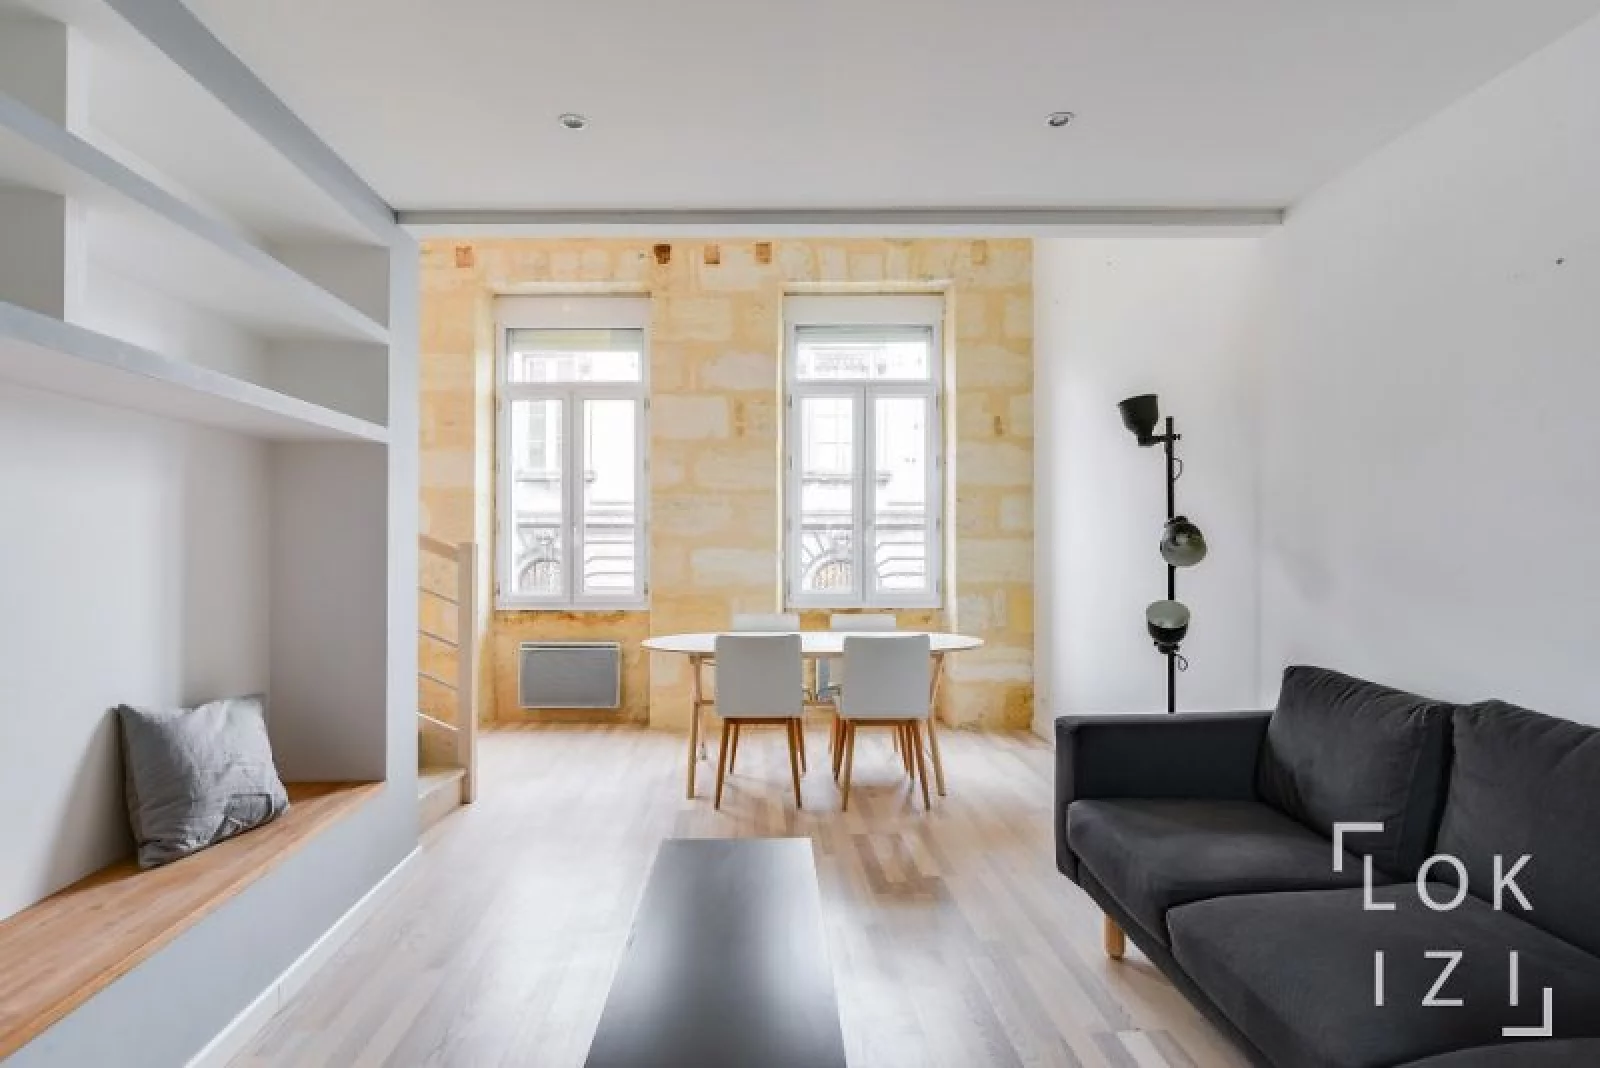 Location appartement meublé duplex 65m² (Bordeaux centre)